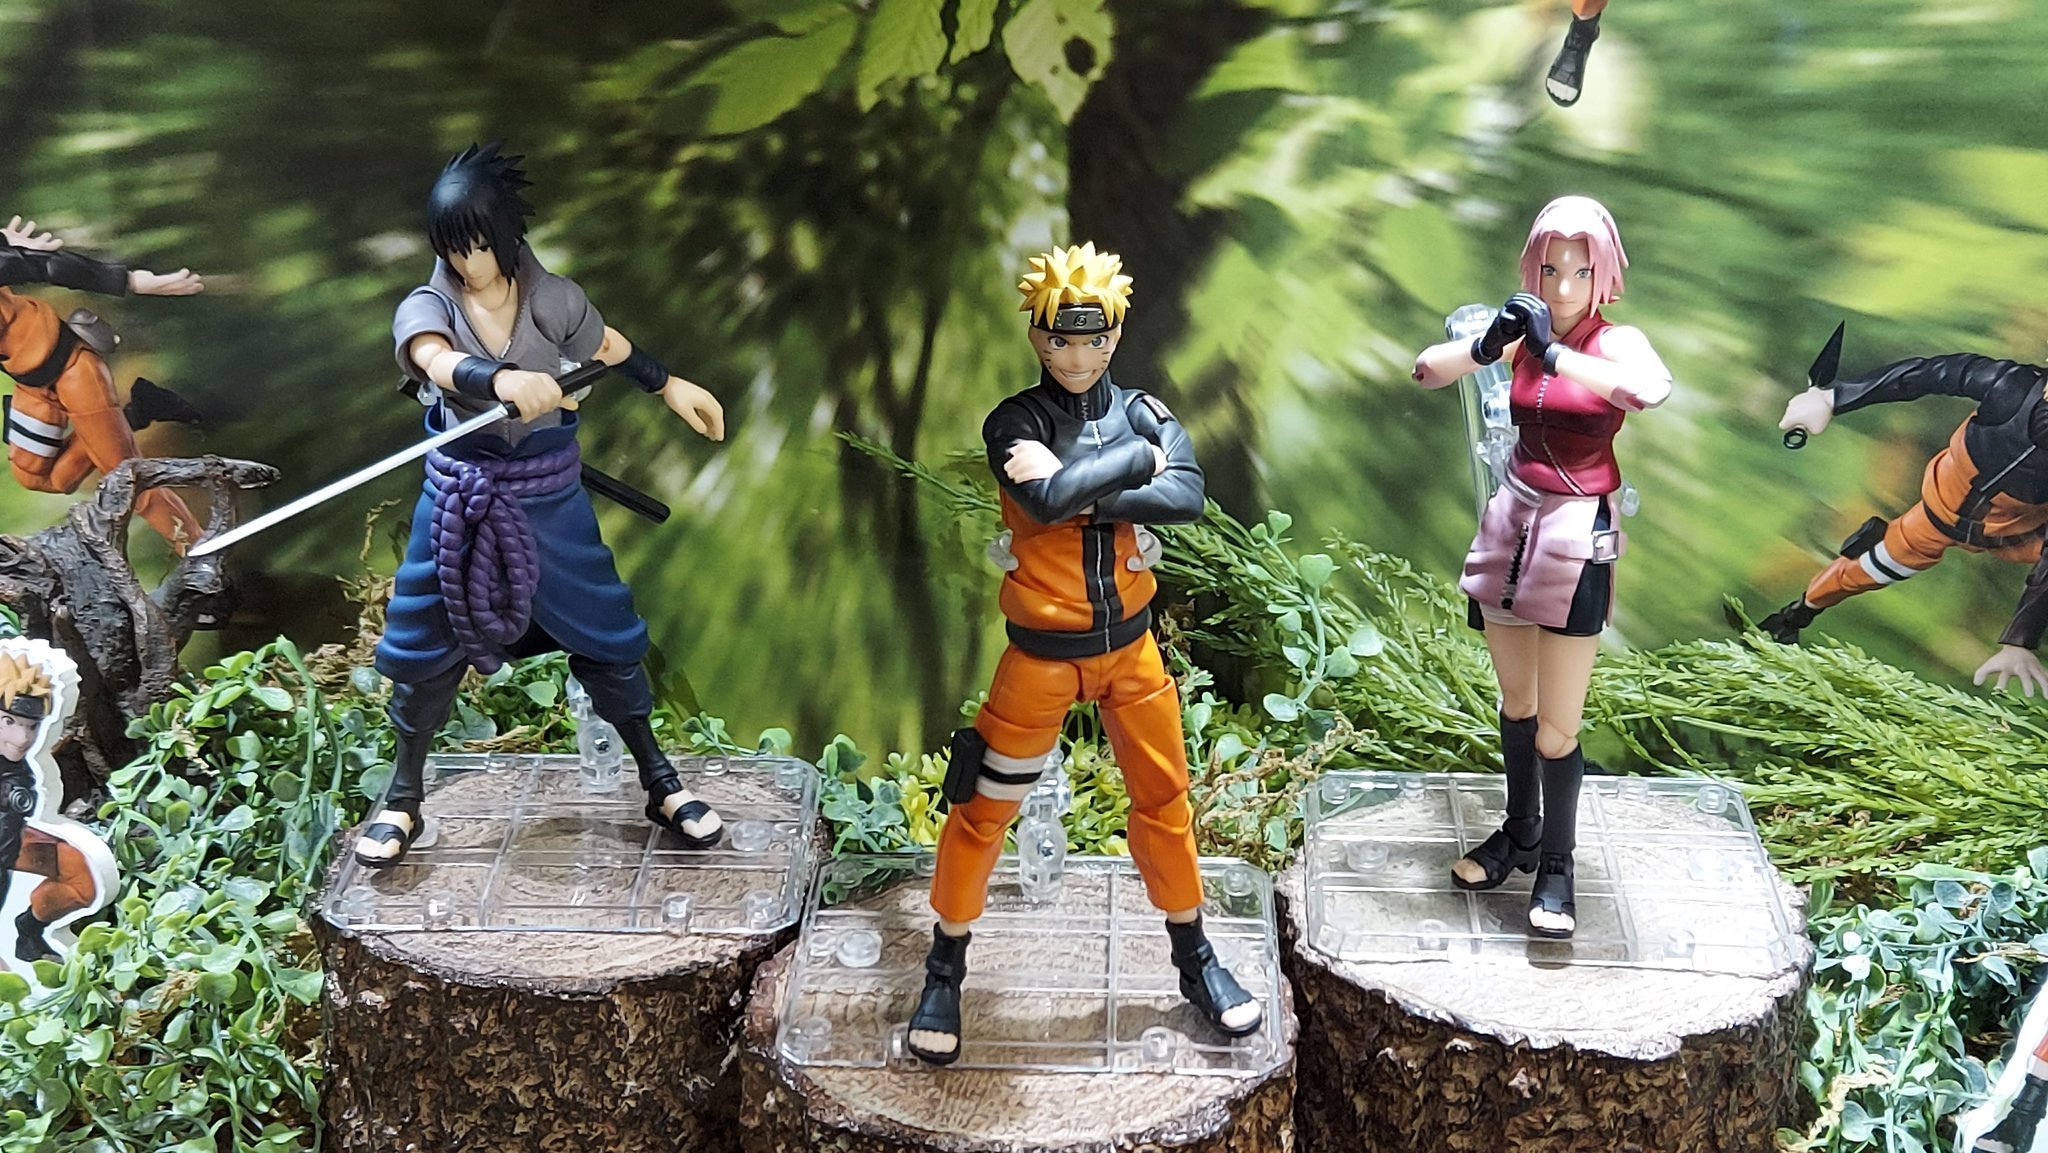 Naruto Shippuden S.H. Figuarts Sakura Haruno Action Figure